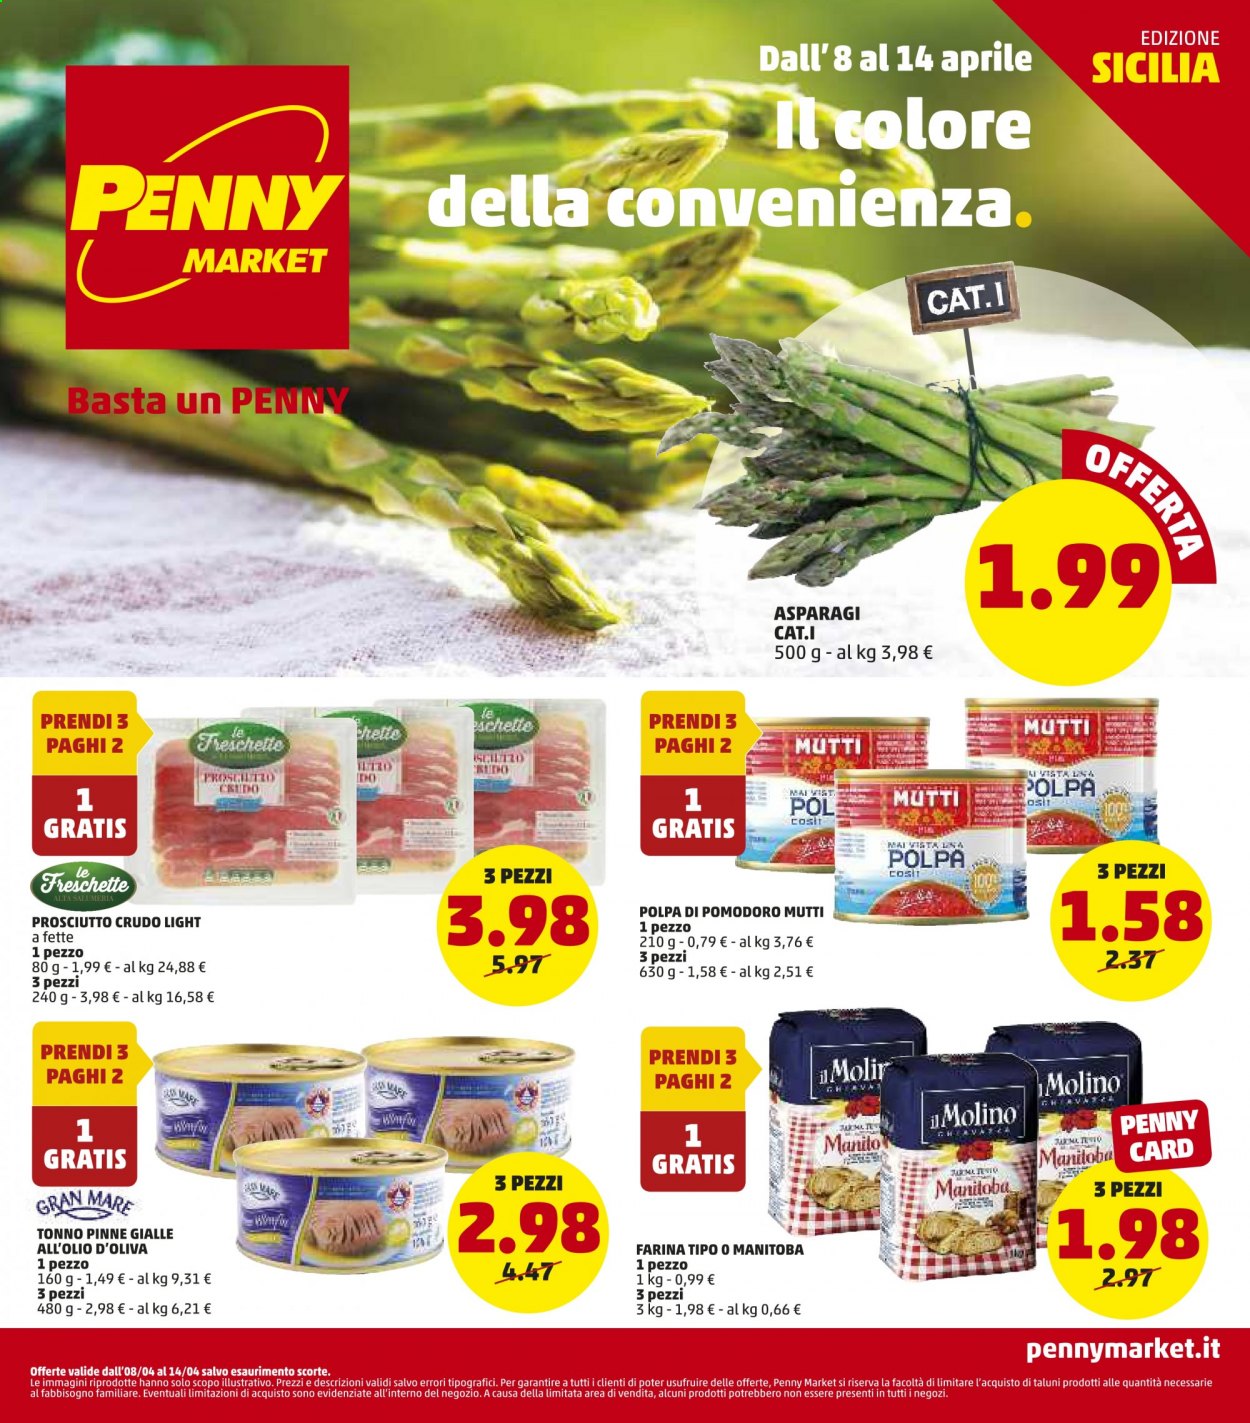 thumbnail - Volantino Penny Market - 8/4/2021 - 14/4/2021 - Prodotti in offerta - asparagi, tonno, prosciutto, prosciutto crudo, farina, farina tipo manitoba, Mutti, polpa di pomodoro. Pagina 1.